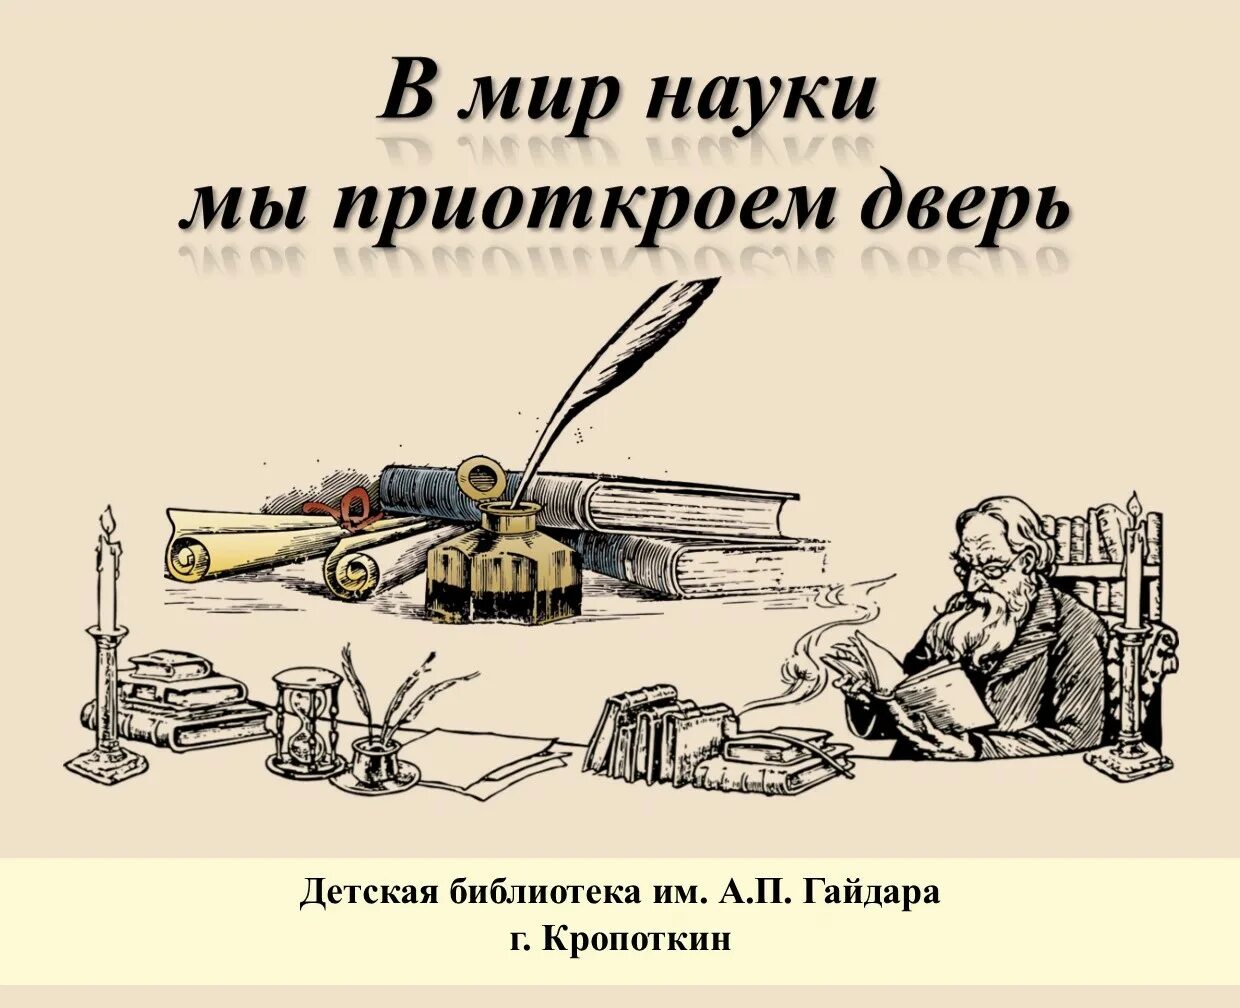 «В мир науки мы приоткроем дверь». День Российской науки 1724. Мир науки.